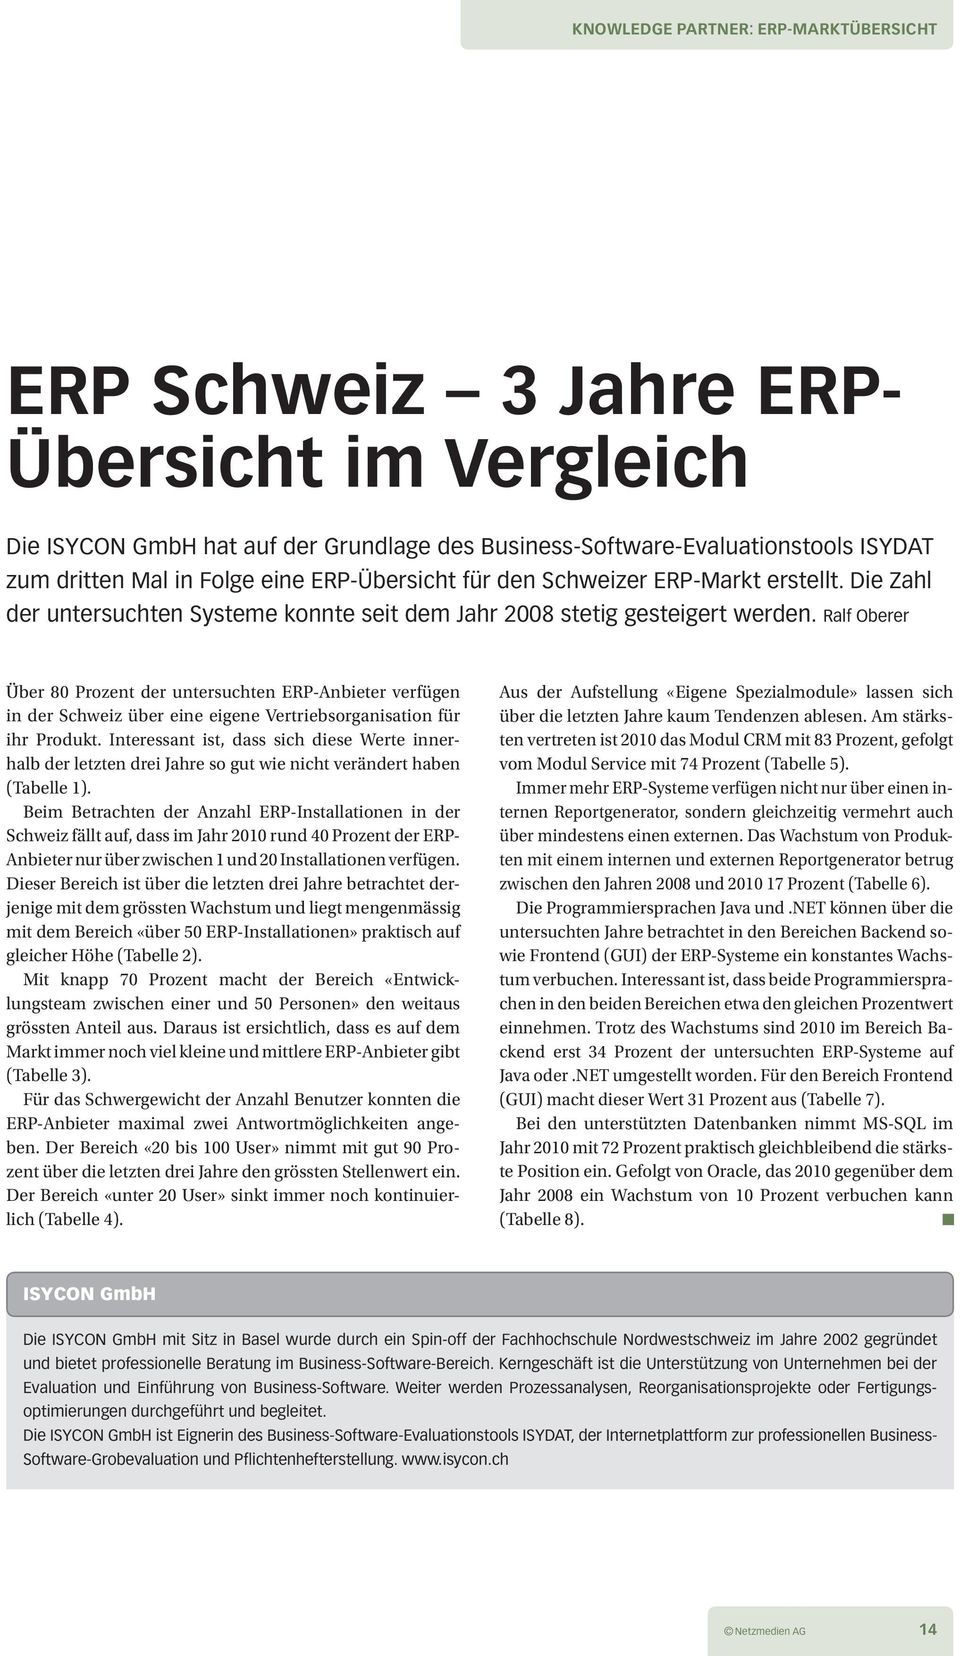 Ralf Oberer Über 80 Prozent der untersuchten ERP-Anbieter verfüge n i n der Schweiz über eine eigene Vertriebsorganisation für ihr Produkt.